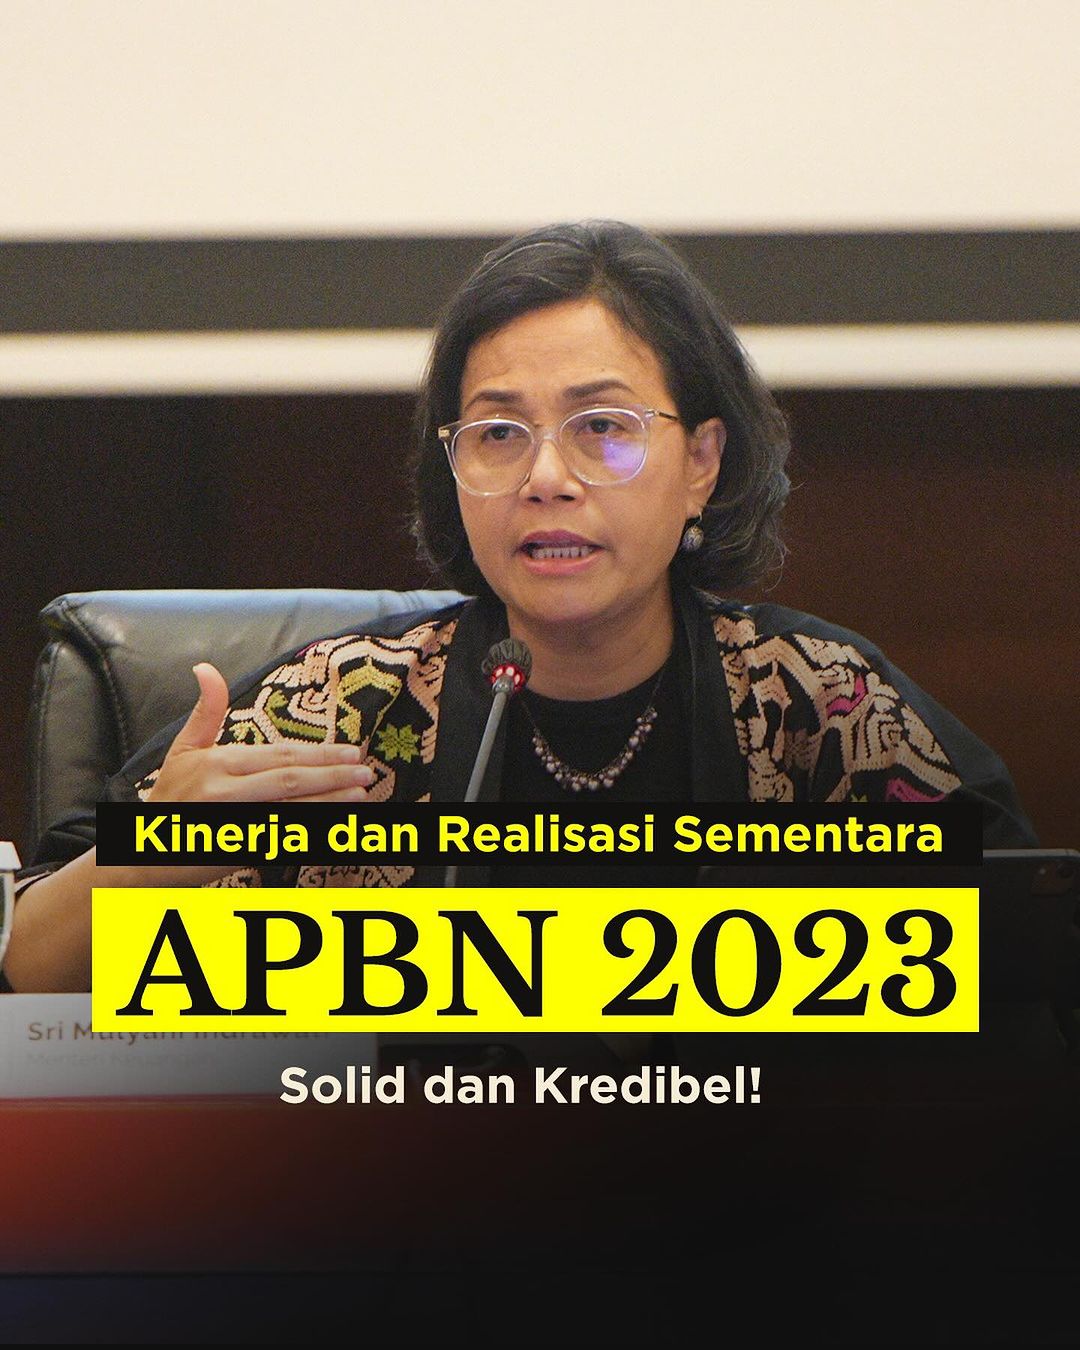 APBN 2023, Solid dan Kredibel